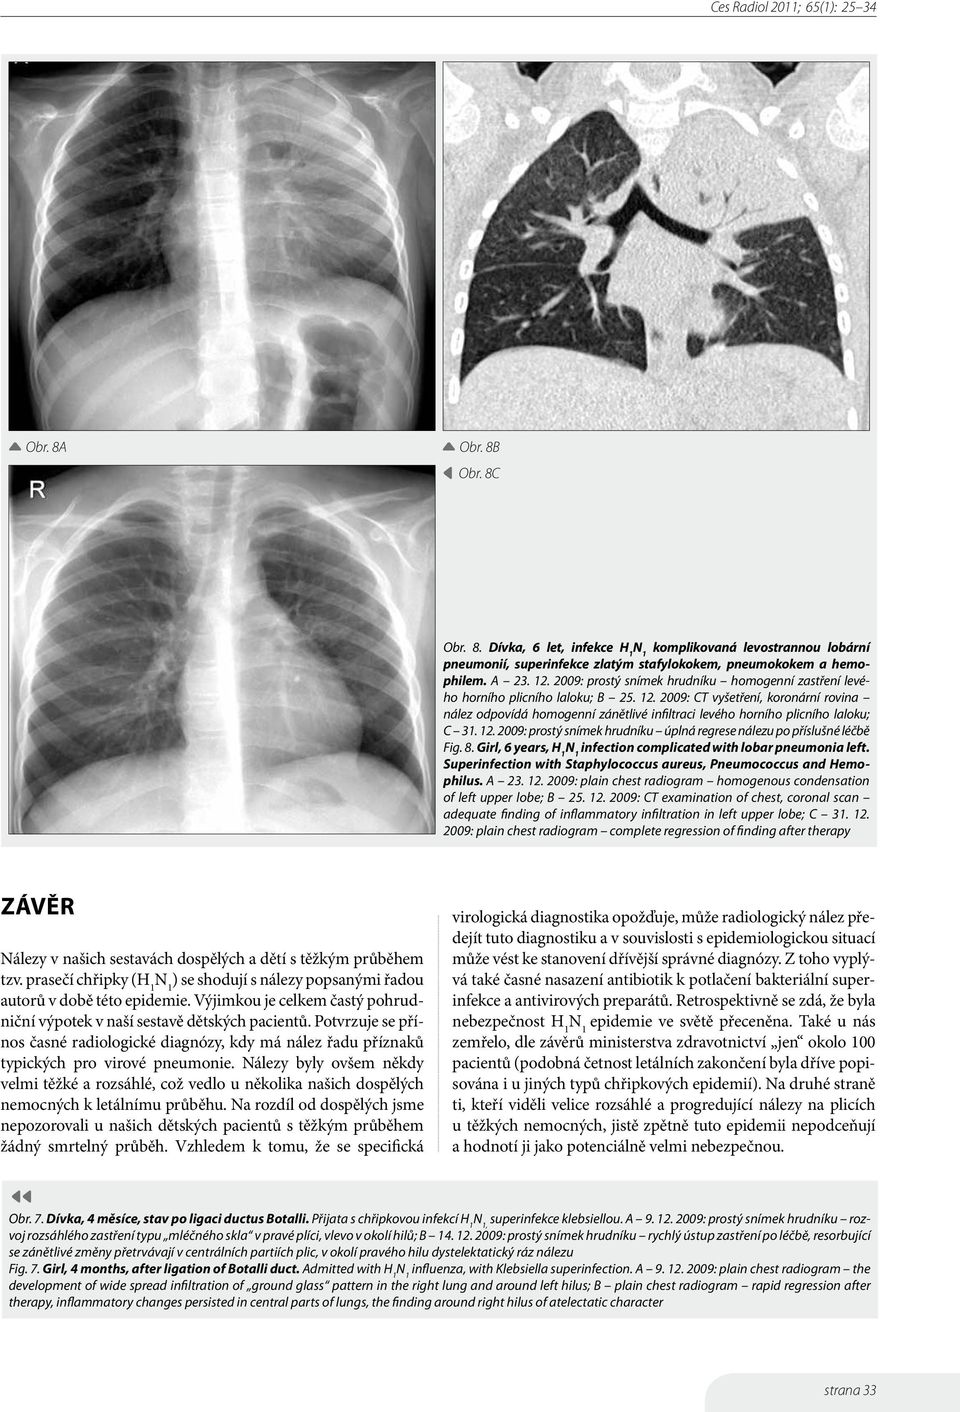 2009: CT vyšetření, koronární rovina nález odpovídá homogenní zánětlivé infiltraci levého horního plicního laloku; C 31. 12. 2009: prostý snímek hrudníku úplná regrese nálezu po příslušné léčbě Fig.